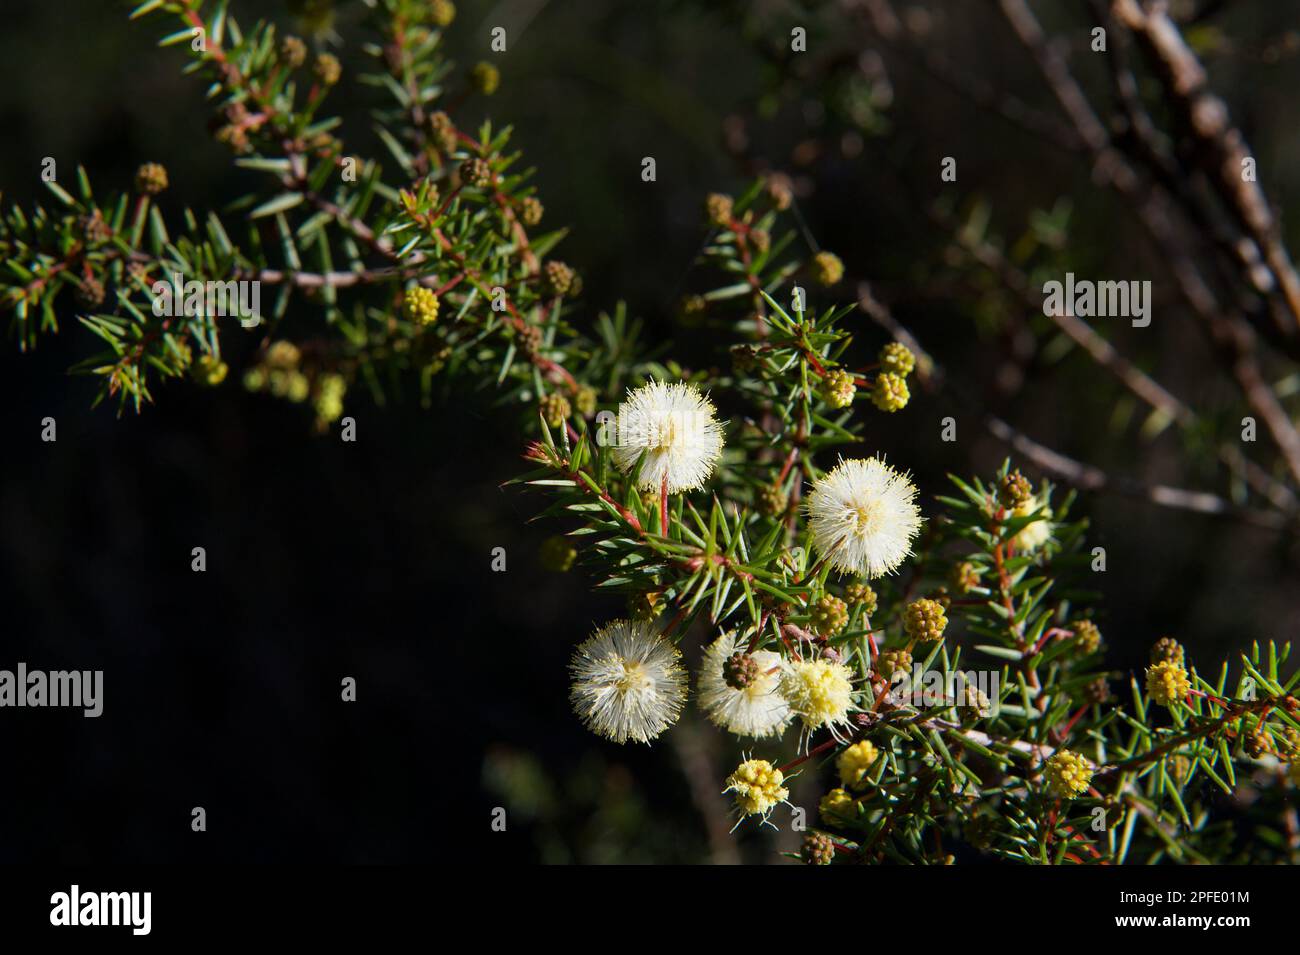 Die Seezunge (Acacia Ulicifolia) ist nicht so spektakulär wie andere Arten und hat viele Dornen. Trotzdem hübsch. Hochkins Ridge Flora Reserve. Stockfoto